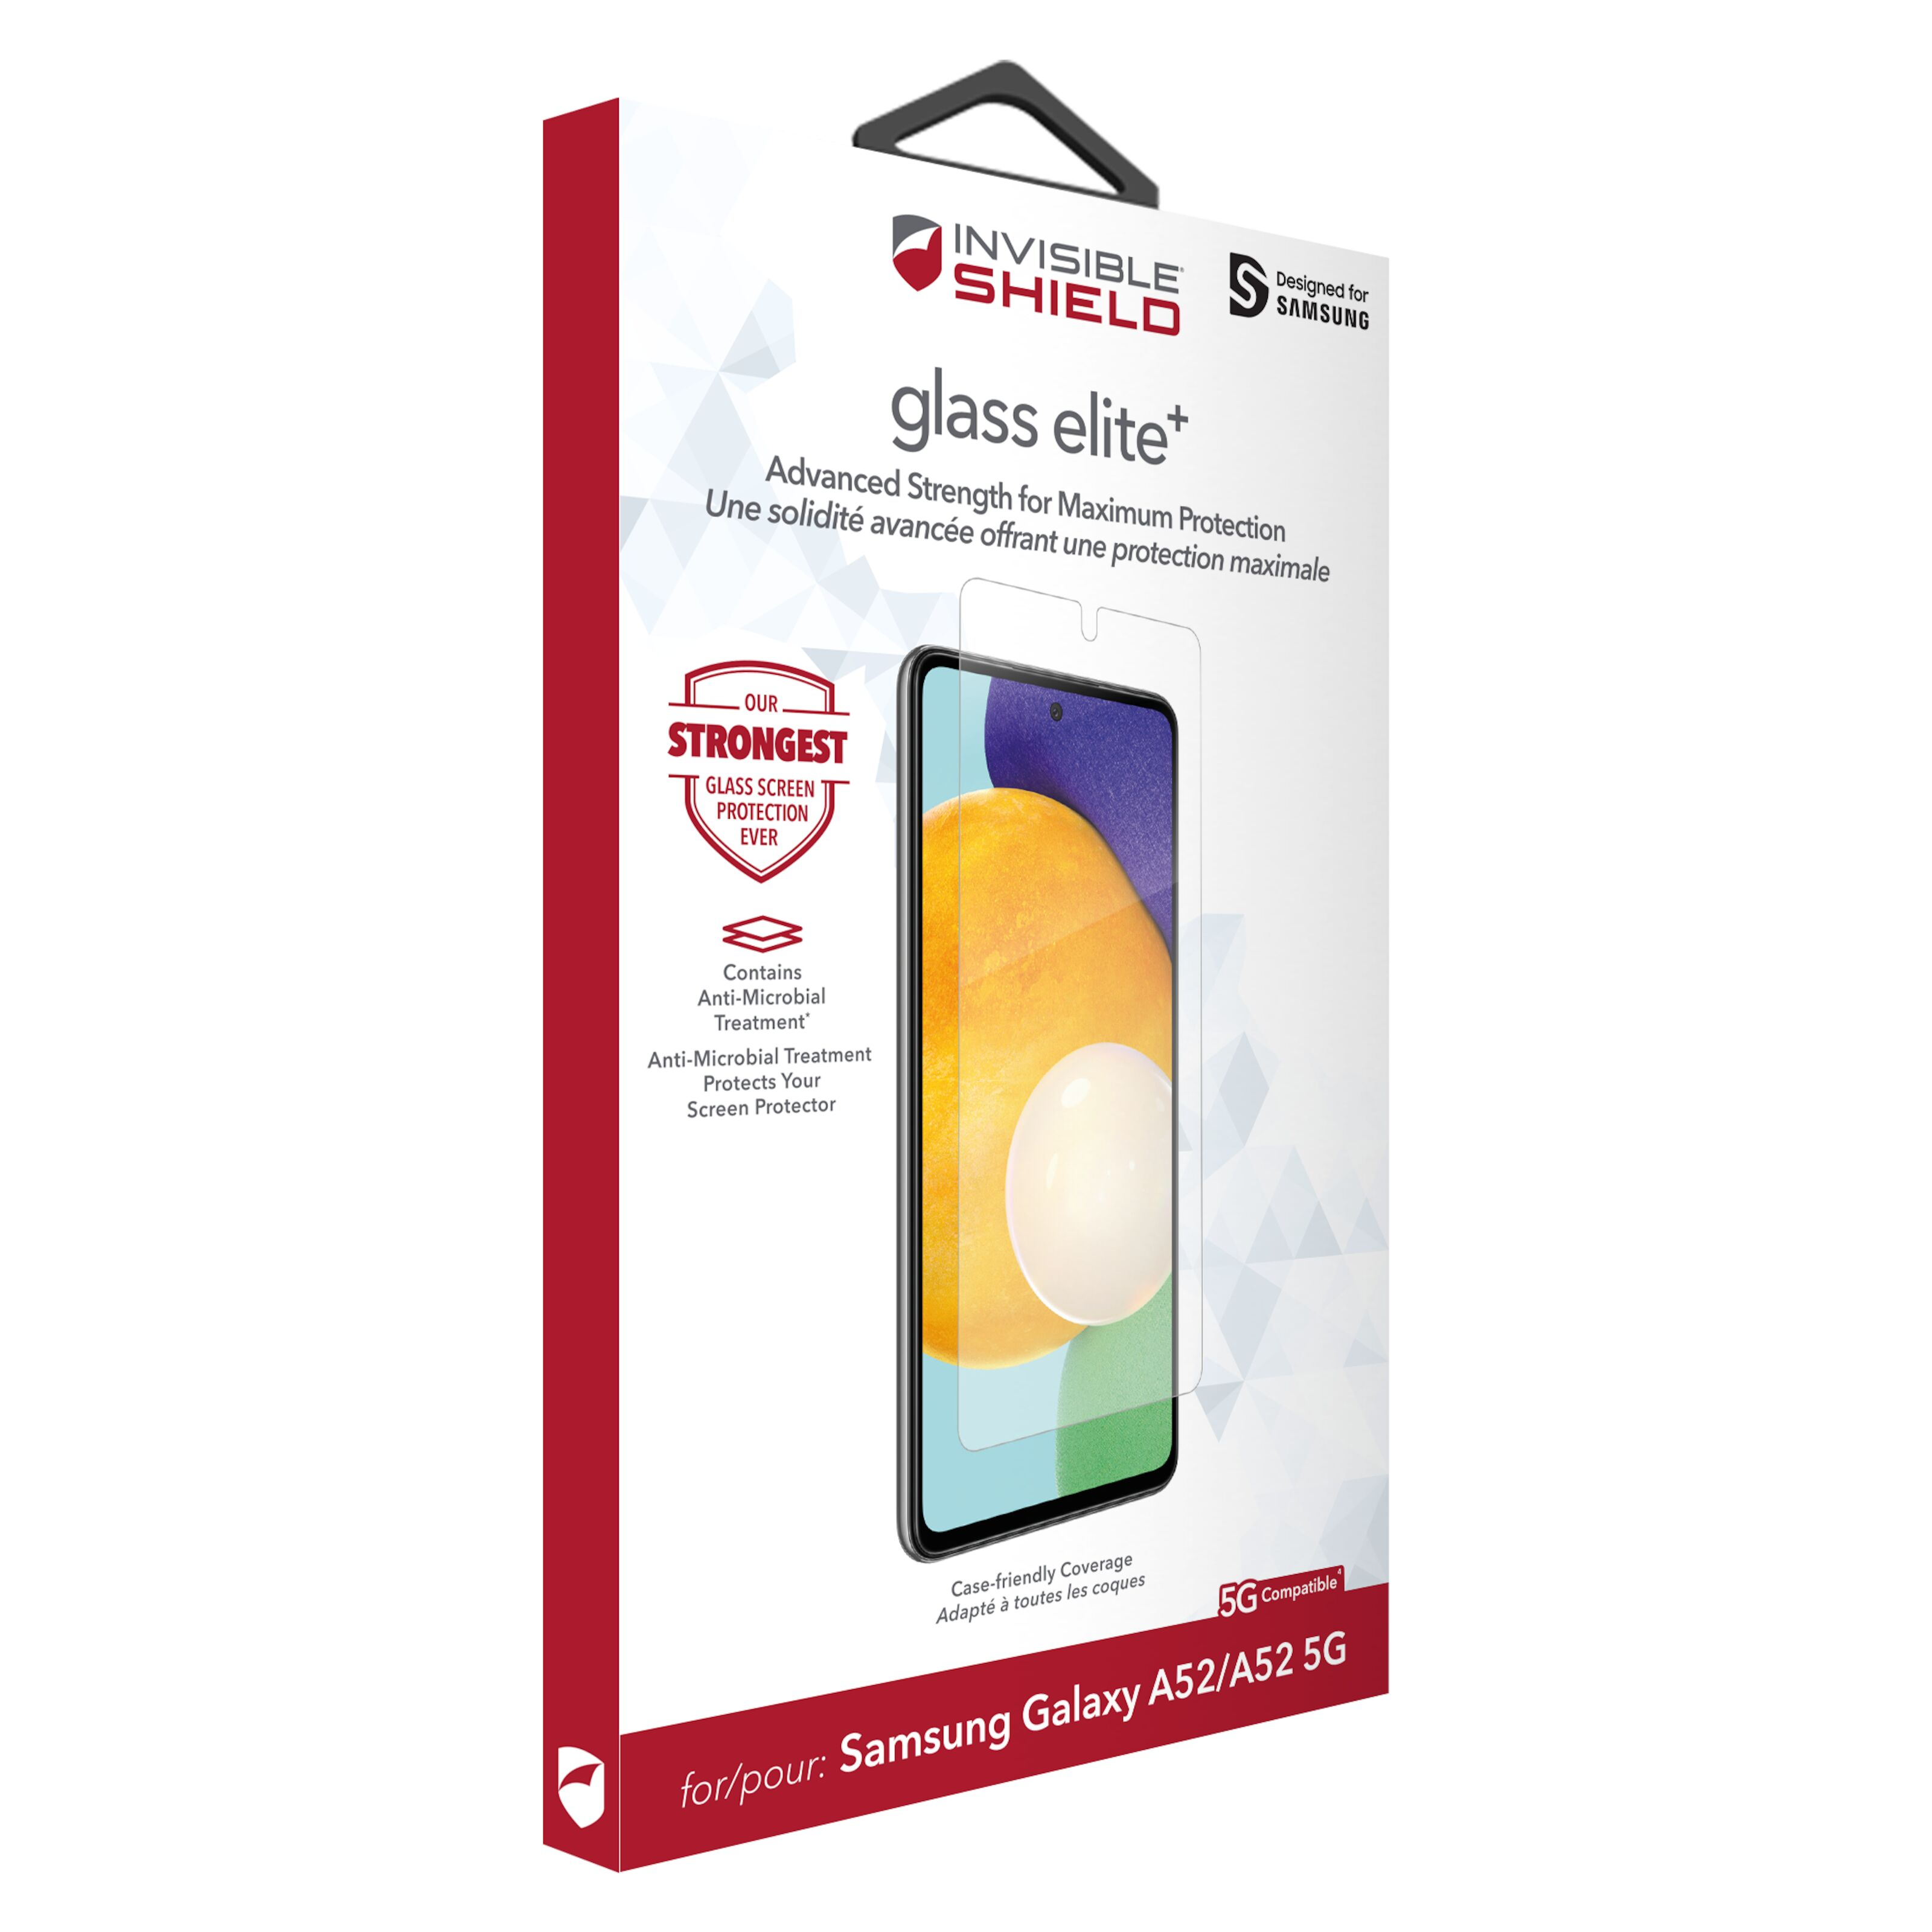 Invisible Shield Glass Elite + Skärmskydd för Galaxy A52